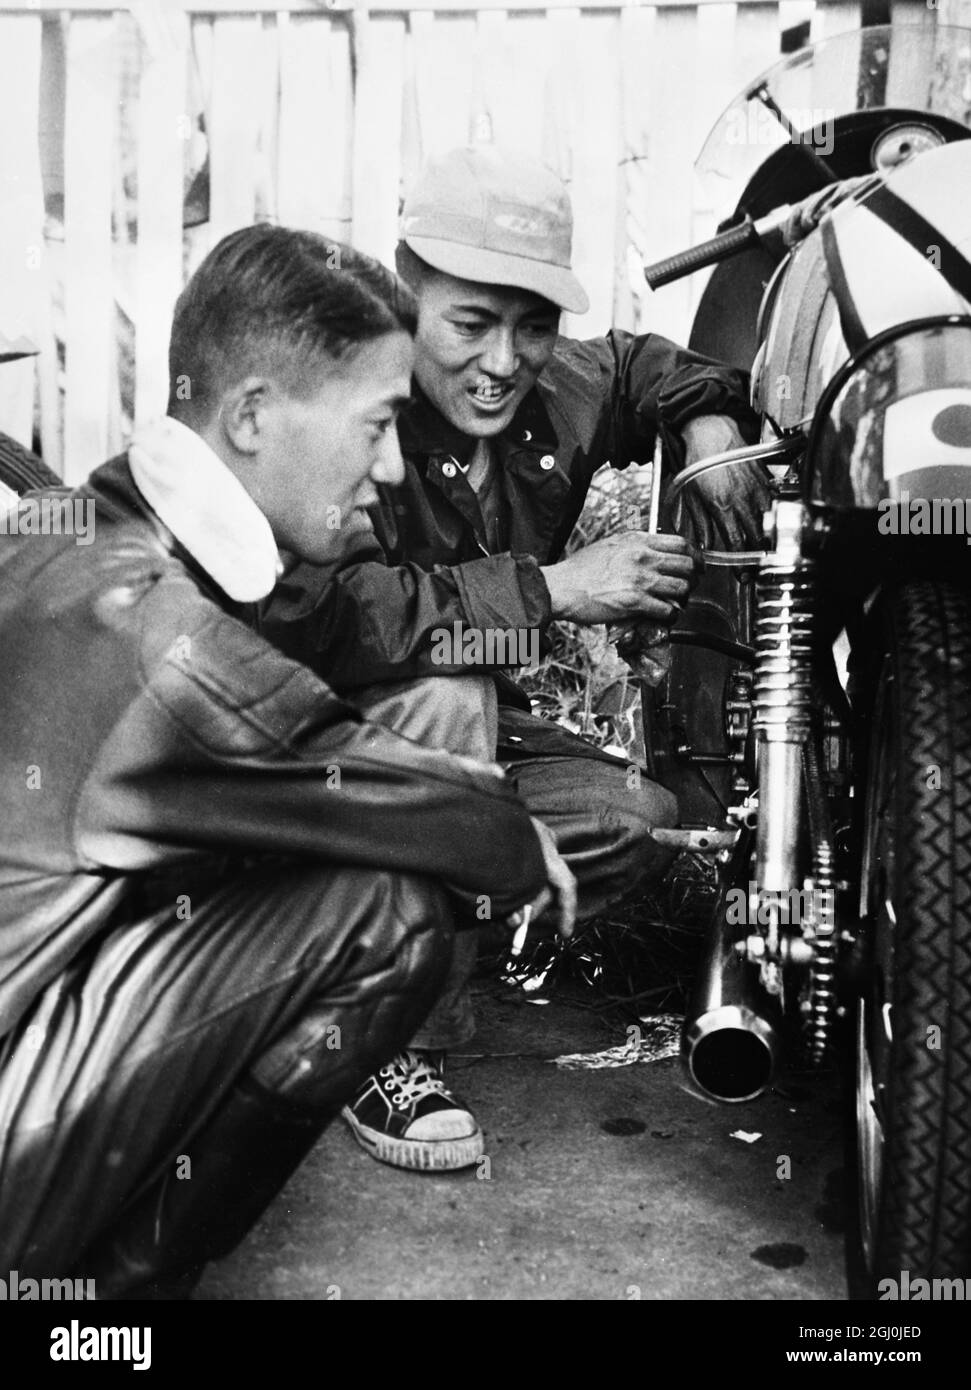 Isola di Man: N Taniguchi, uno dei membri della squadra giapponese di moto qui per le gare TT ha una discussione tecnica con il meccanico capo. Stanno guidando le macchine Honda nelle corse. 27 maggio 1959 Foto Stock